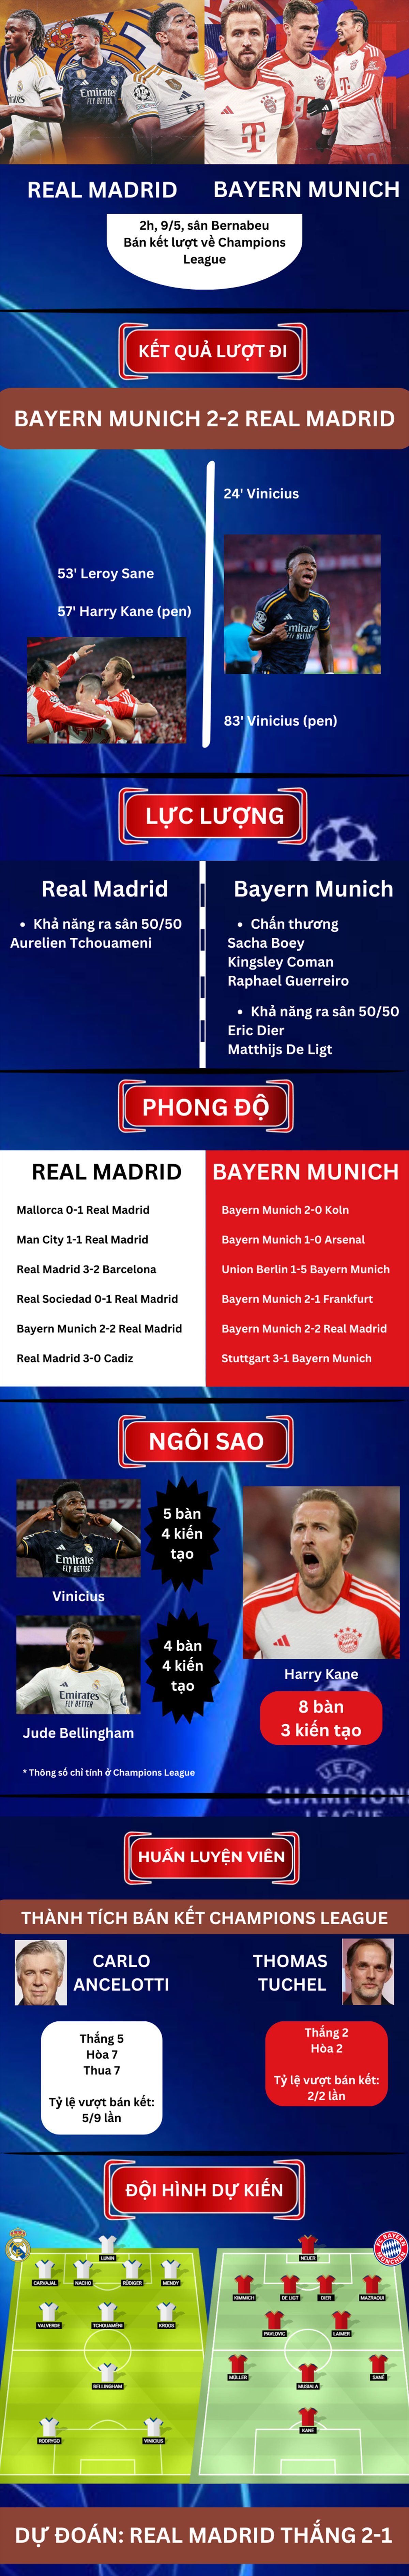 Nhận định bóng đá Real Madrid - Bayern Munich: Đấu trí đỉnh cao tranh vé vàng (Champions League) - 1